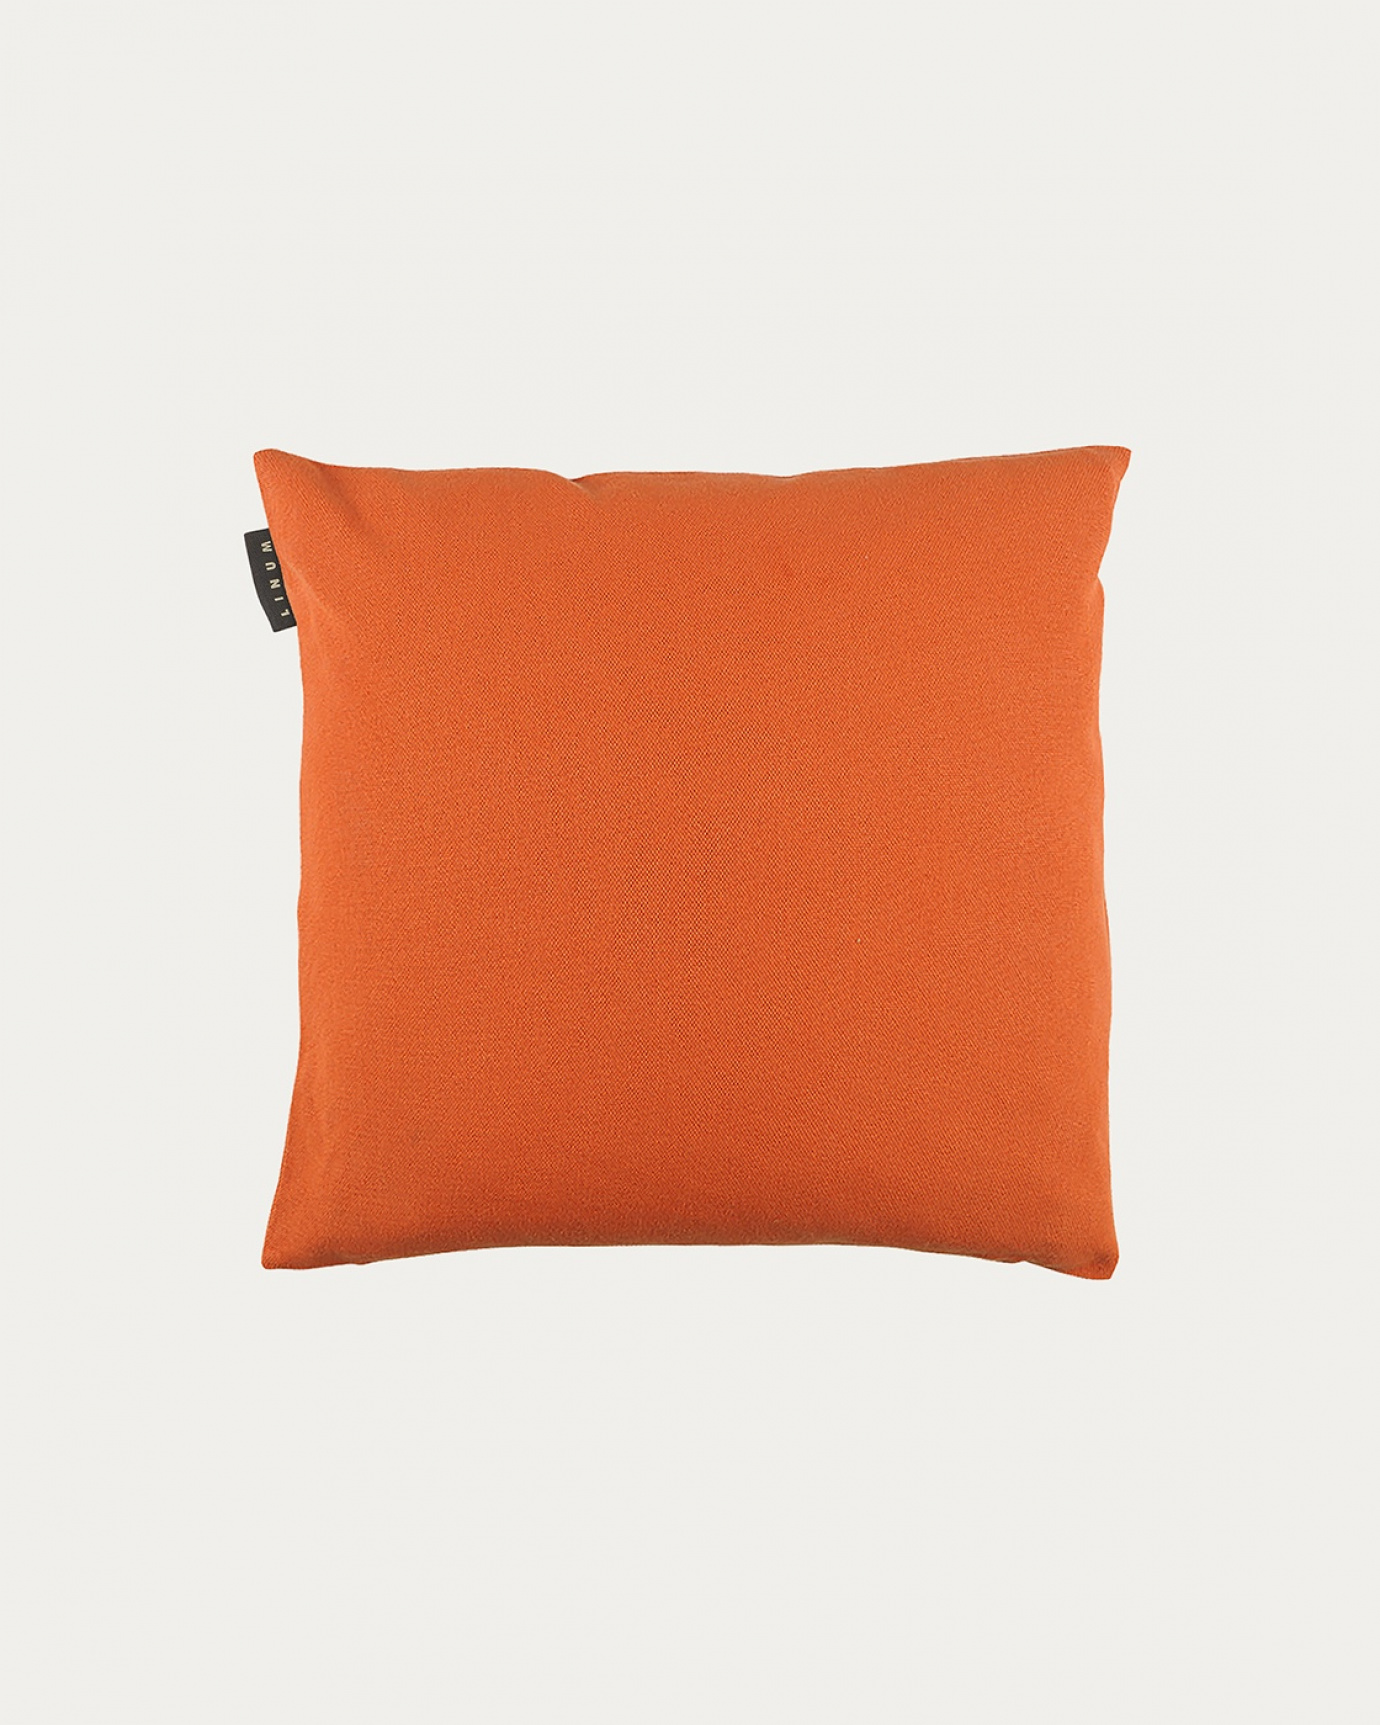 Produktbild orange PEPPER kuddfodral av mjuk bomull från LINUM DESIGN. Lätt att tvätta och hållbar genom generationer. Storlek 40x40 cm.